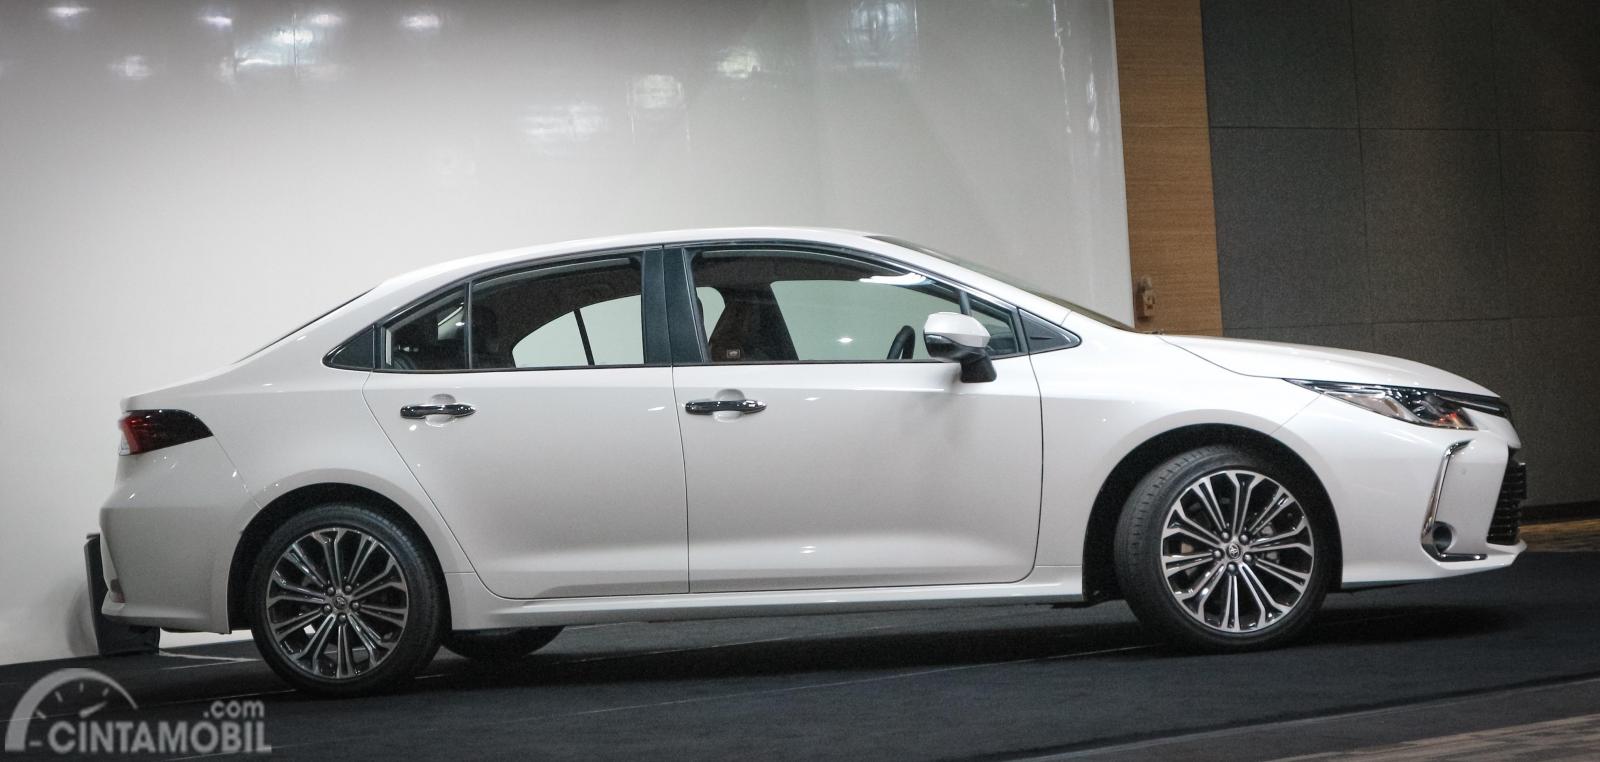 Gambar menunjukkan tampilan Toyota Corolla Altis 1.8 V 2019 dari sisi samping